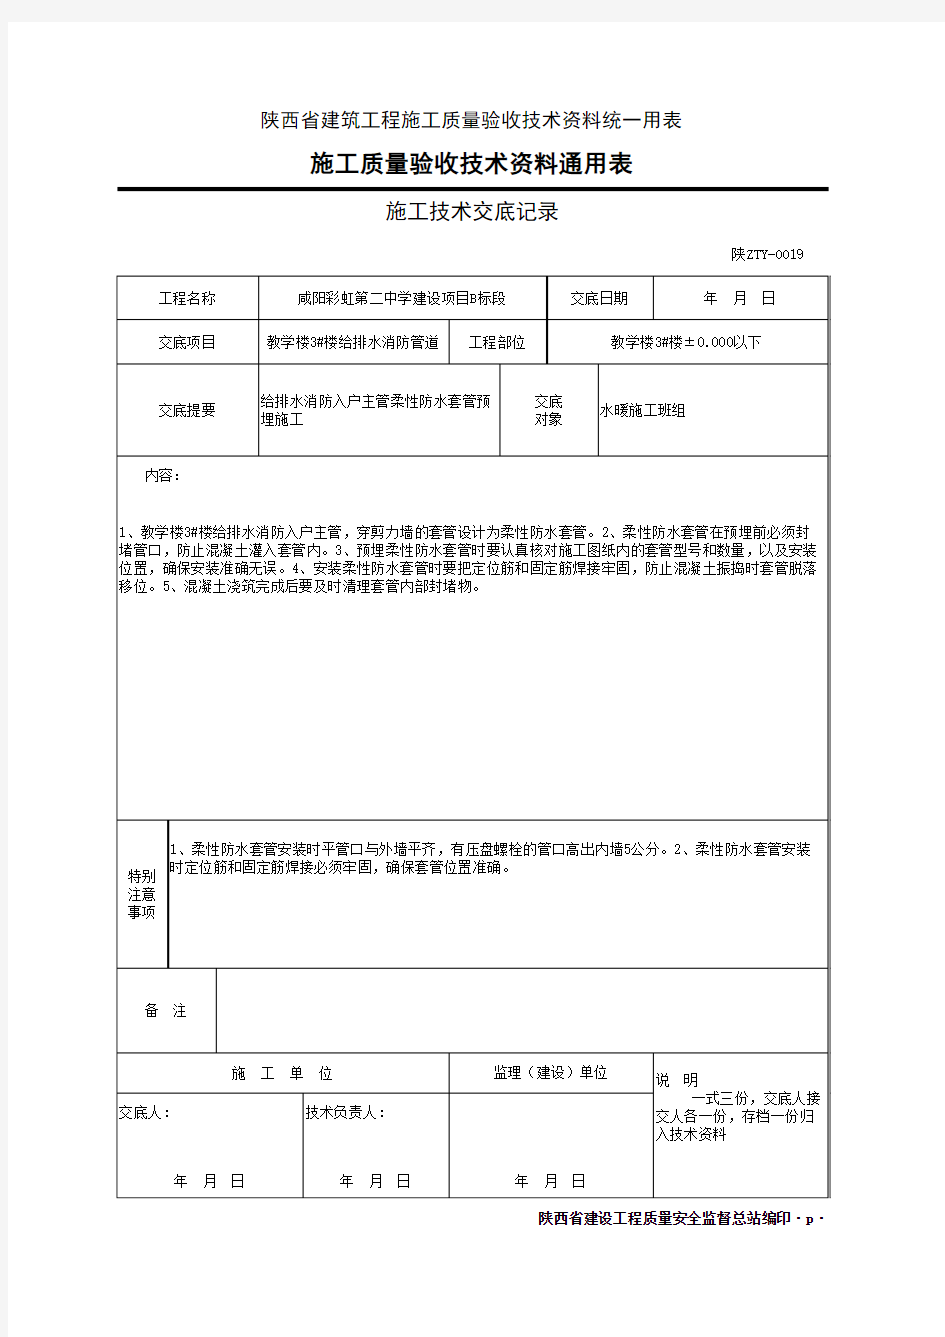 003-陕ZTY-0019 施工技术交底记录04-B1019(2)